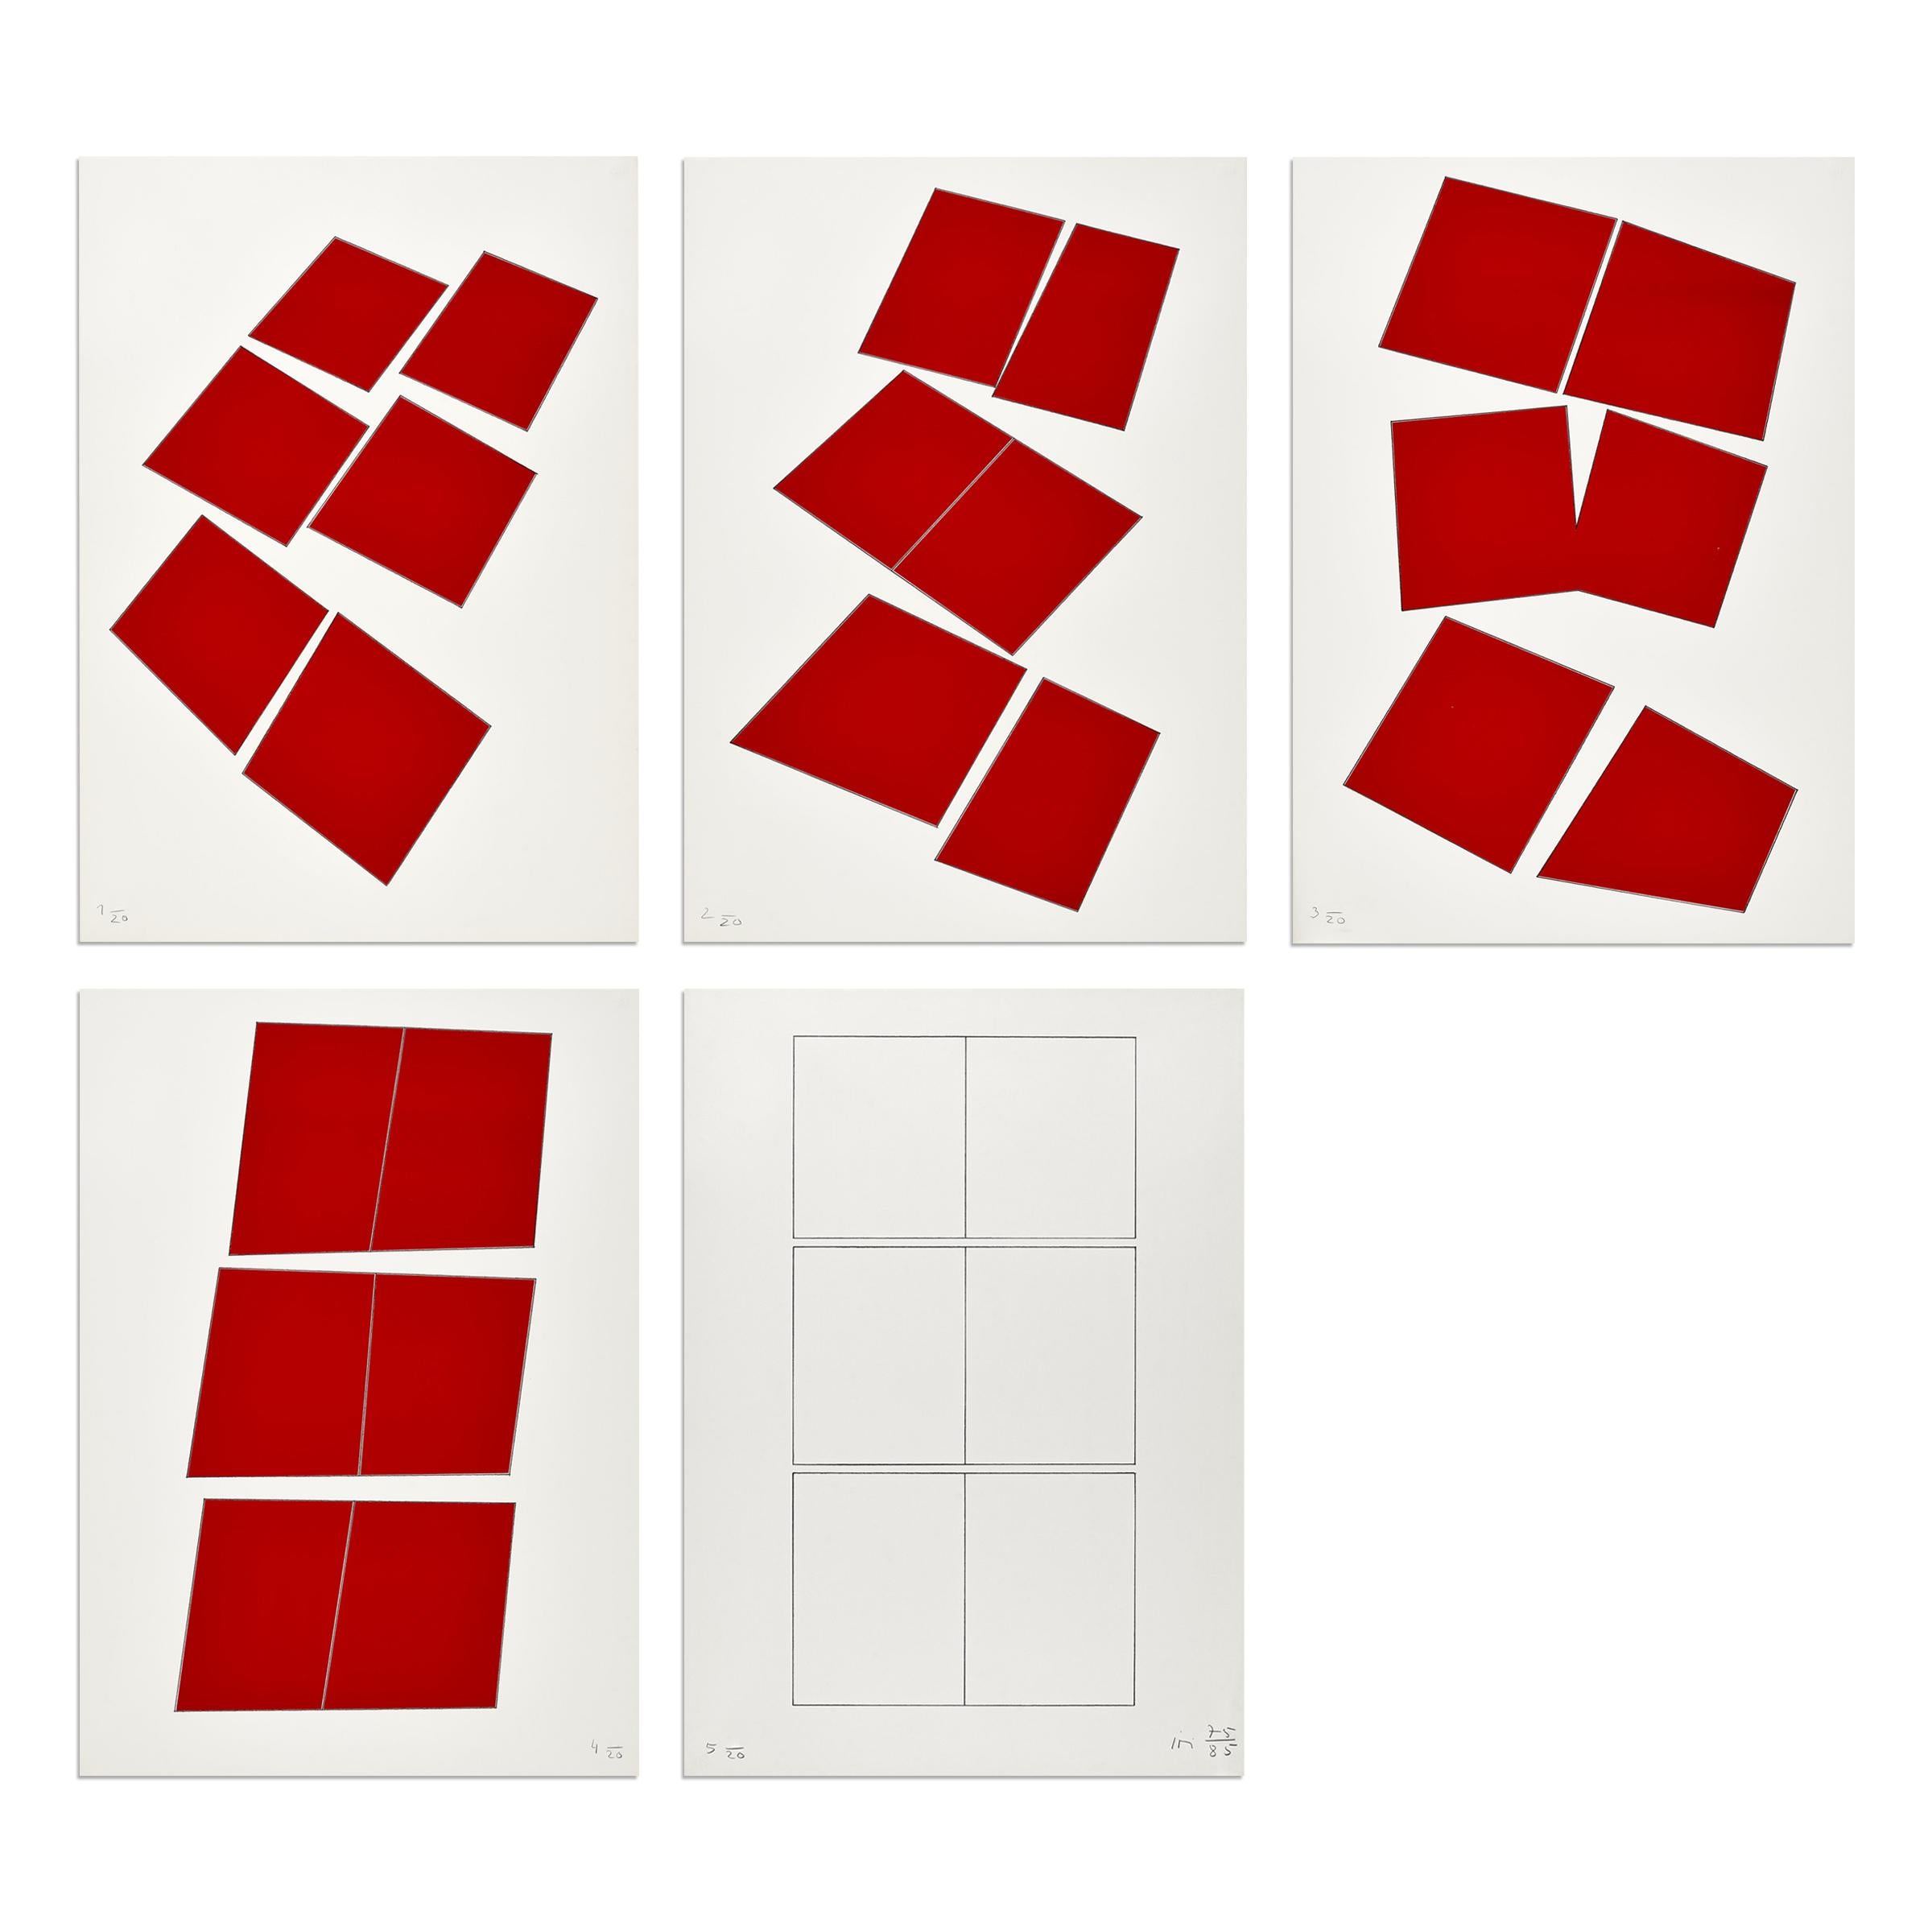 Imi Knoebel (Deutscher, geboren 1940)
Rote Konstellation, 1975/1985
Medium: Folge von 5 Siebdrucken und Bleistift auf Velinpapier
Abmessungen: 102 x 73 cm (40,2 x 28,7 Zoll)
Auflage von 20: Jedes Exemplar handsigniert und mit Bleistift